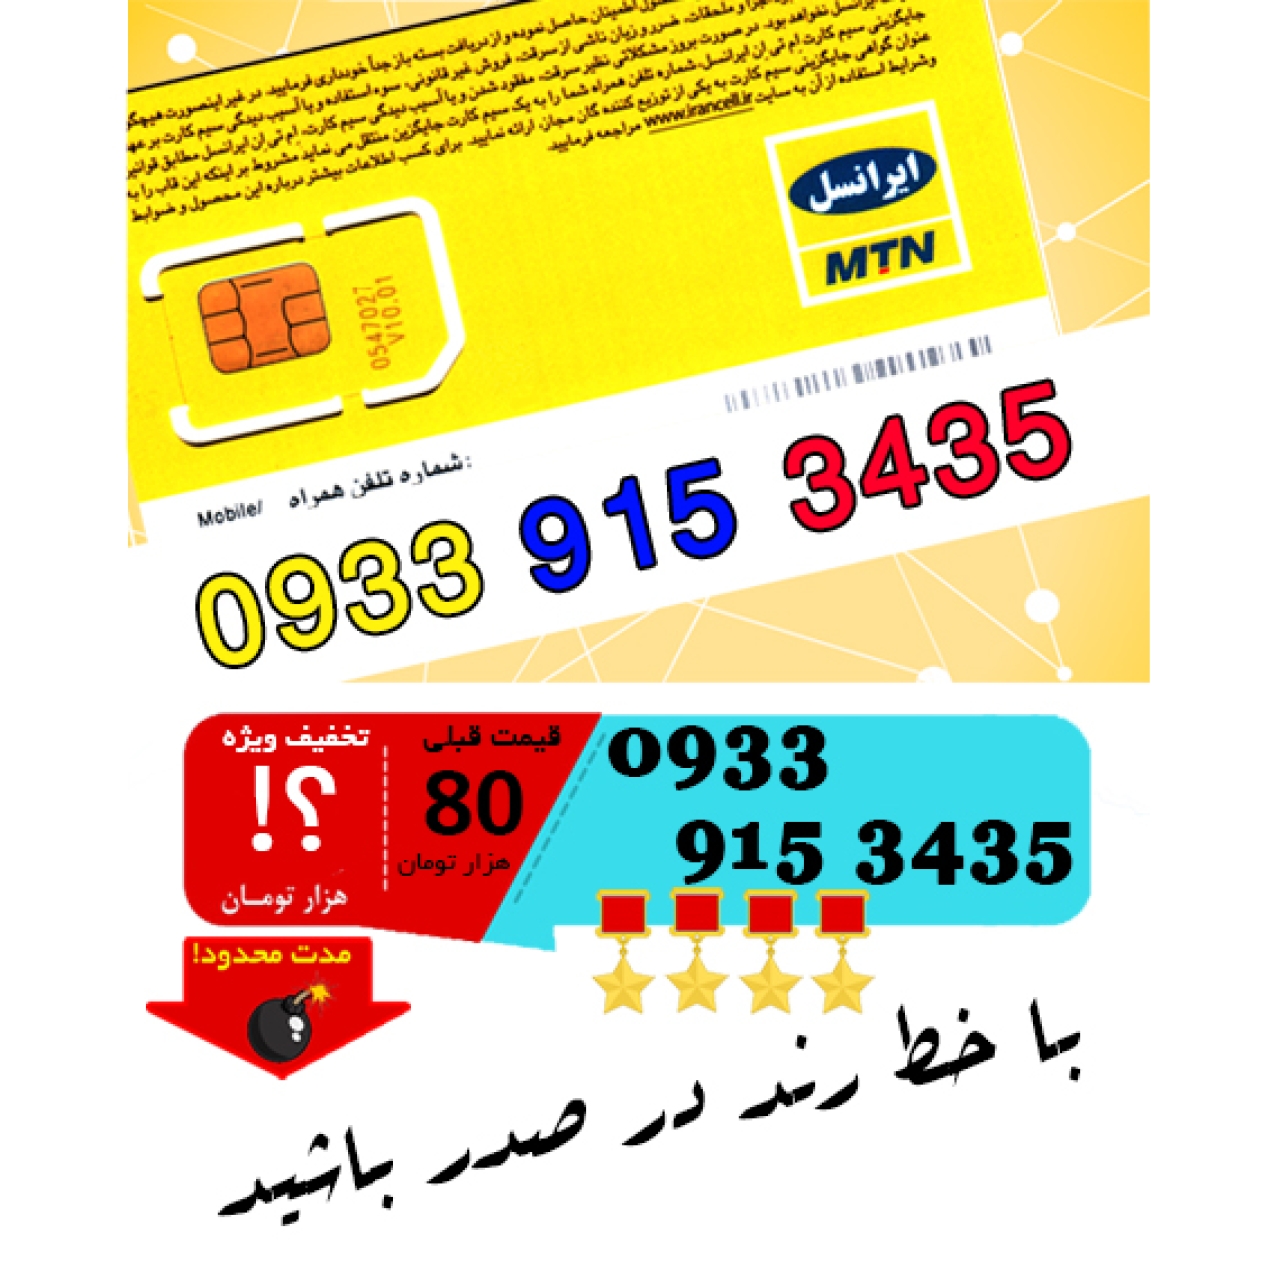 سیم کارت اعتباری ایرانسل 09339153435